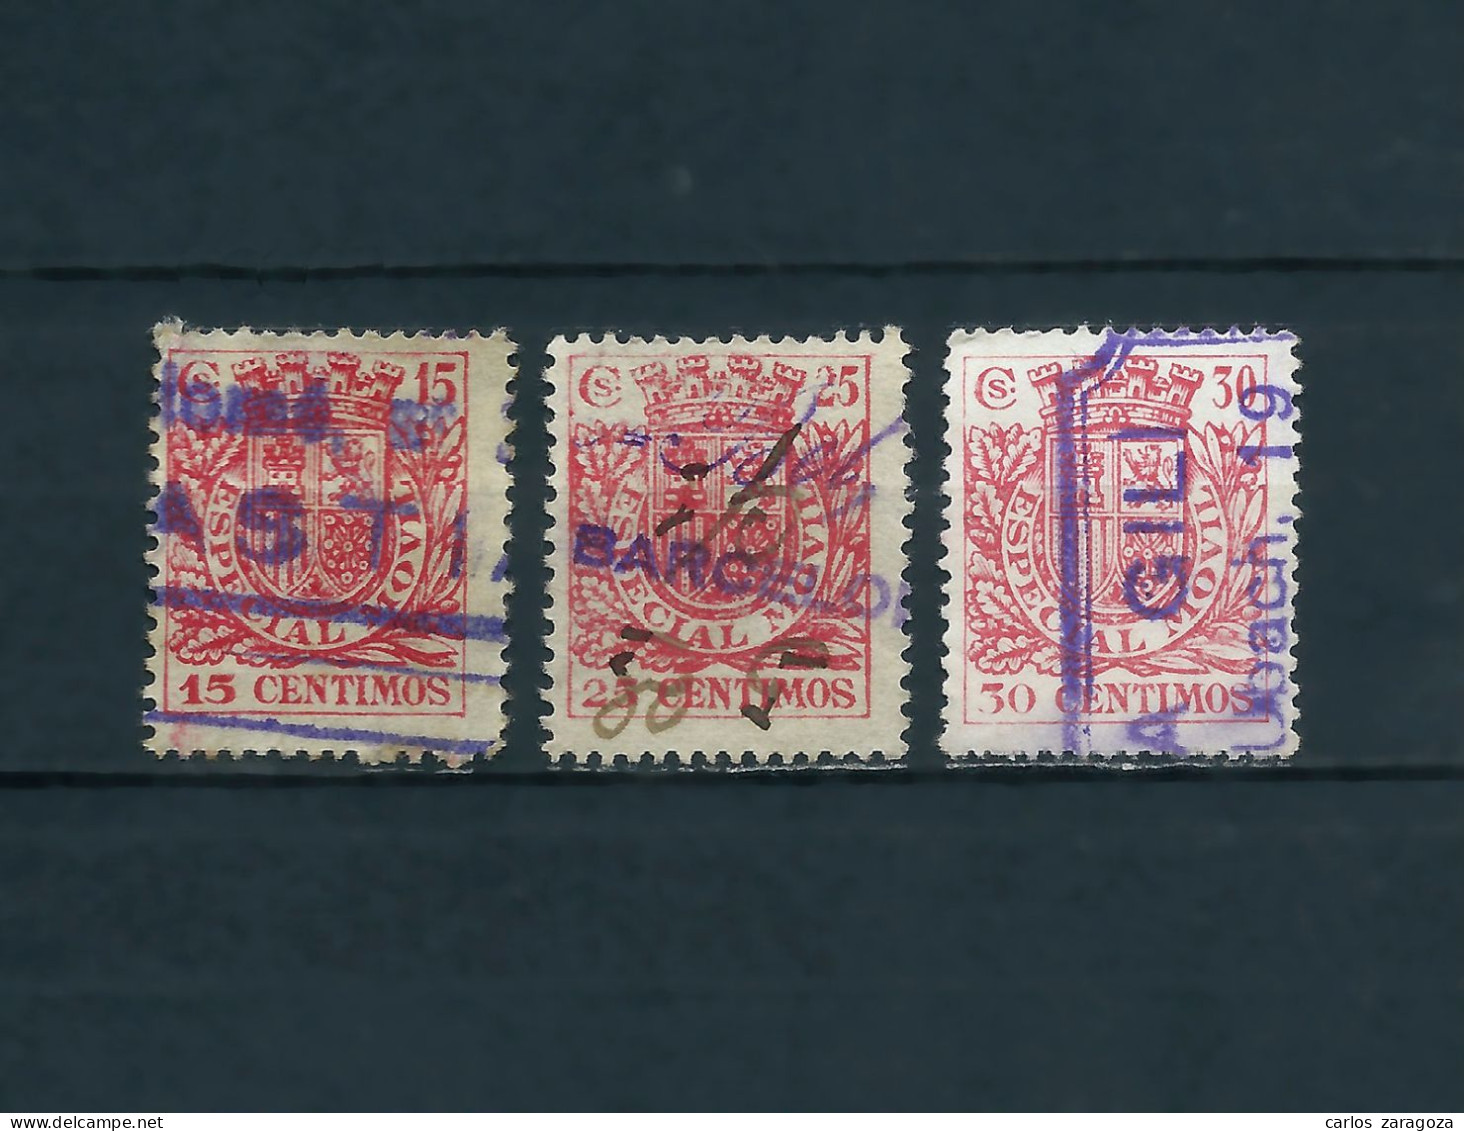 ESPAÑA 1934 — REPUBLICA ESPAÑOLA — LOTE DE SELLOS FISCALES — ESPECIAL MOVIL, 4 TIMBRES - Steuermarken